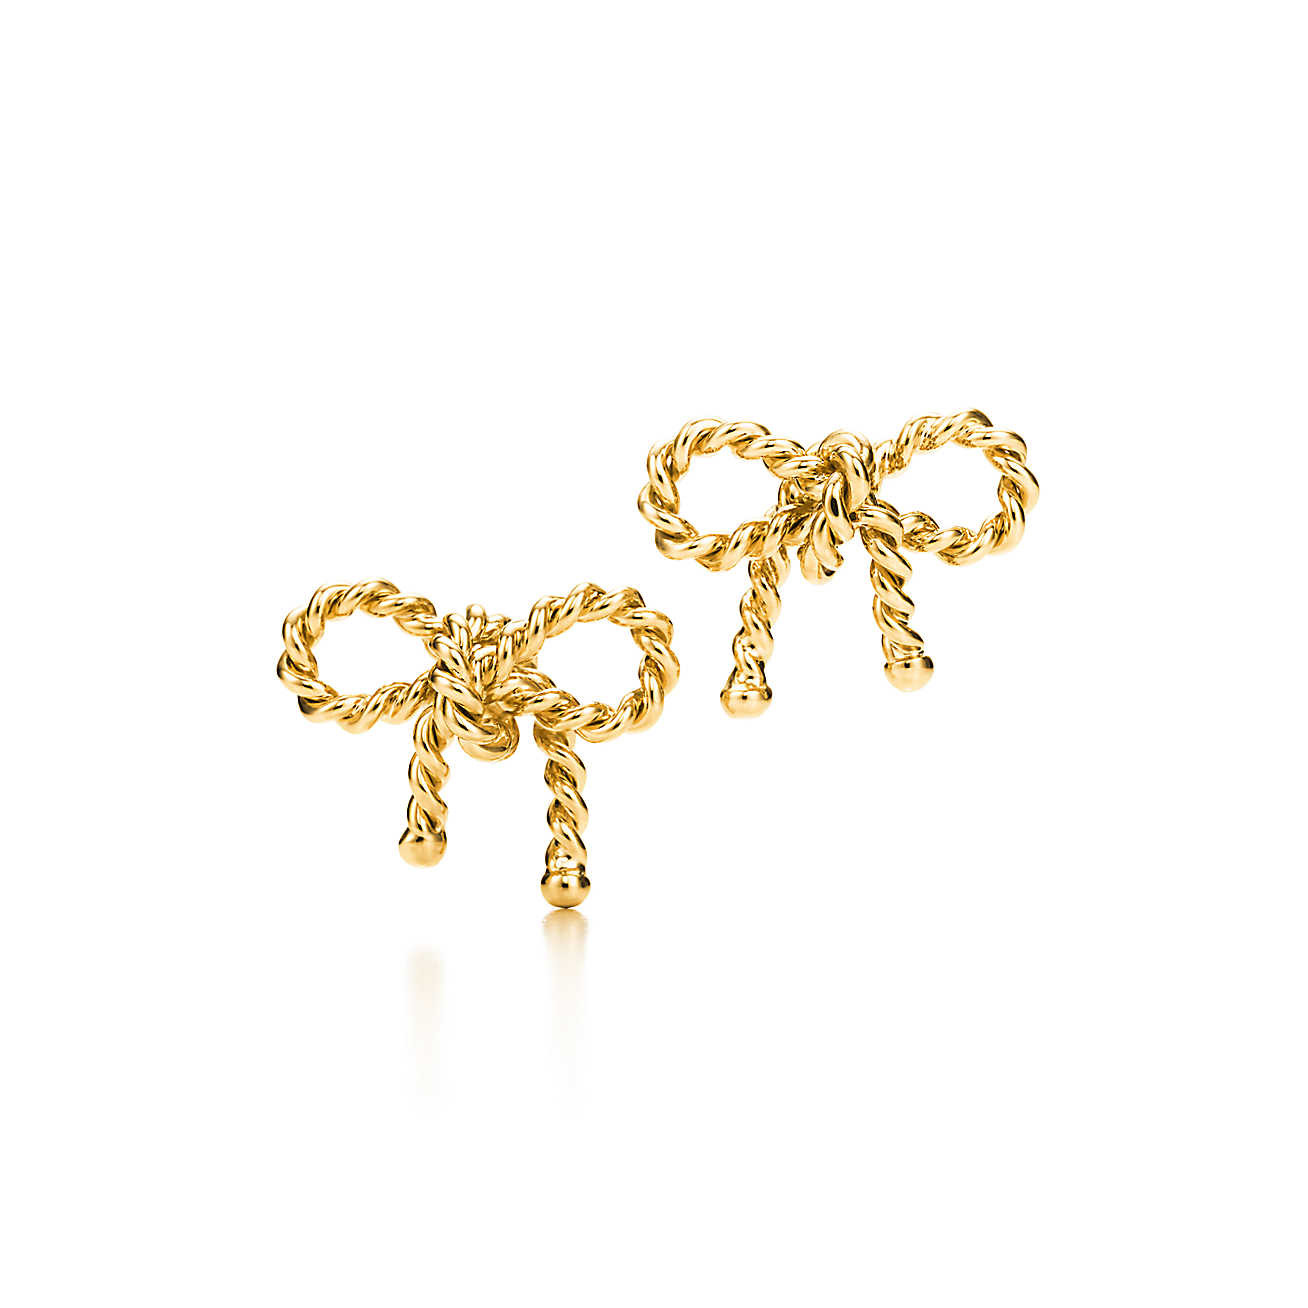 Tiffany Bow Earrings
 Tiffany Twist bow earrings in 18k gold